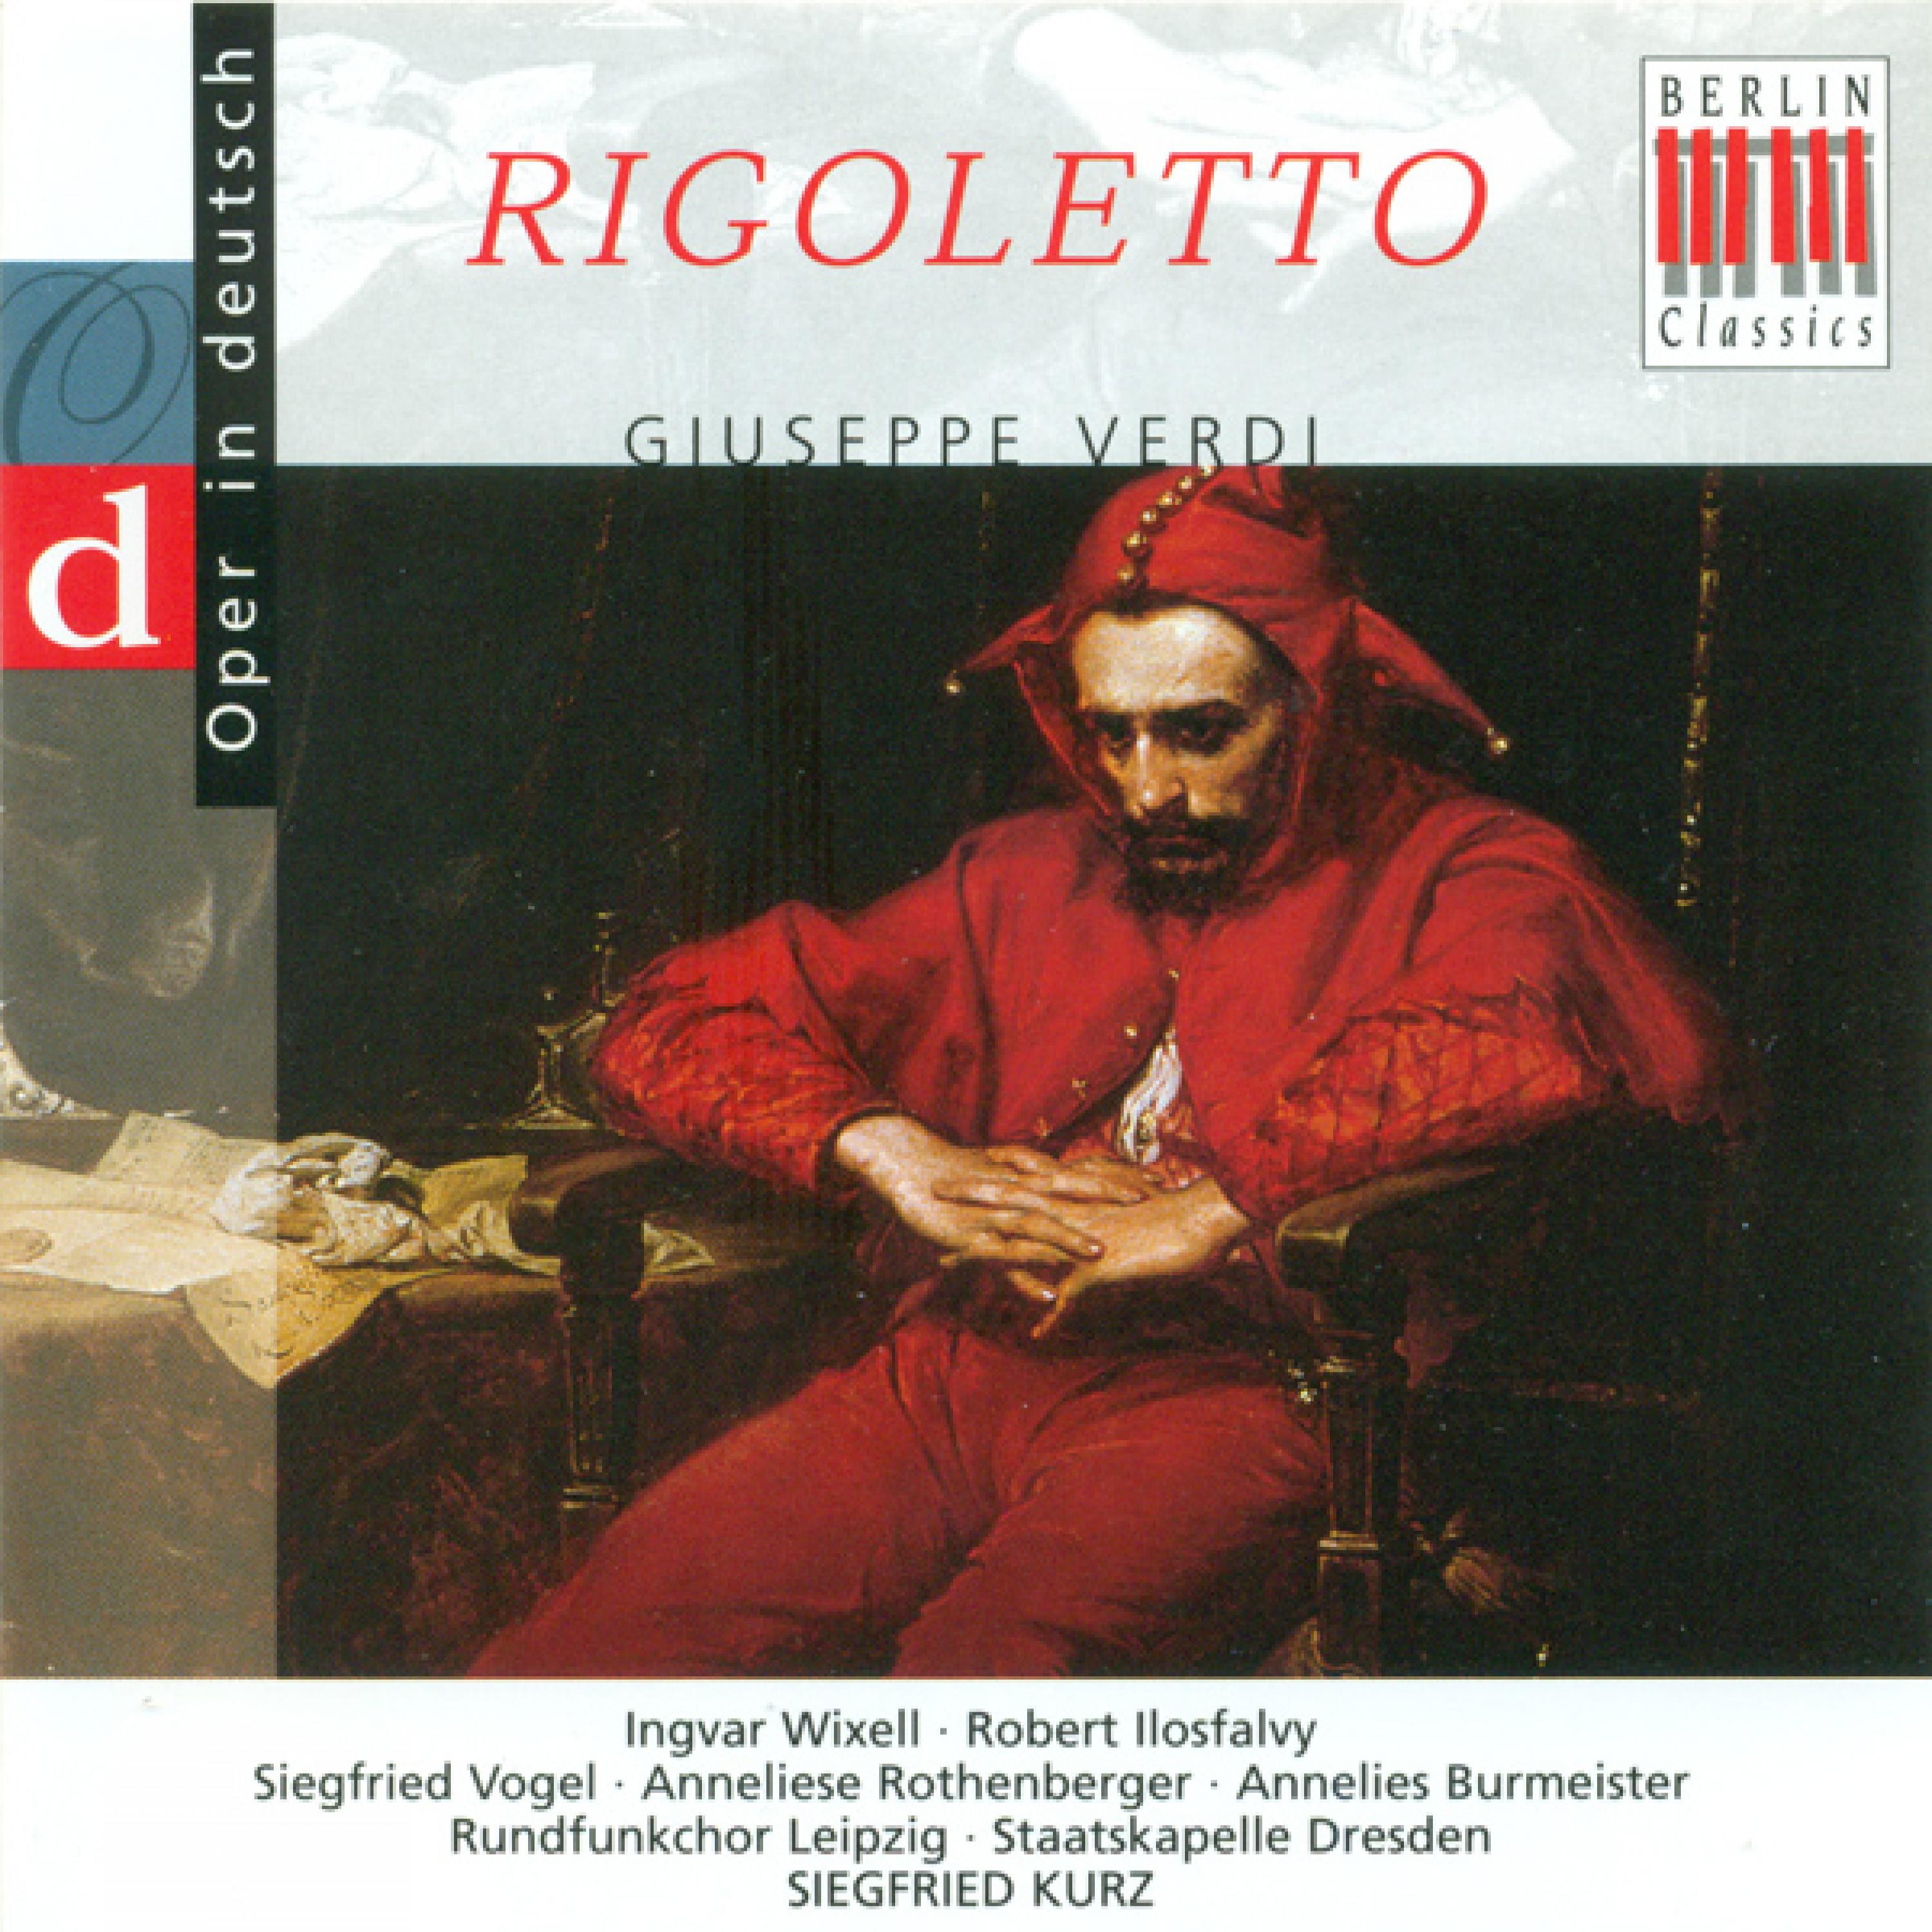 Rigoletto, Act I: "Giovanna, mir ist so bange!" - "Liebe ist Seligkeit"